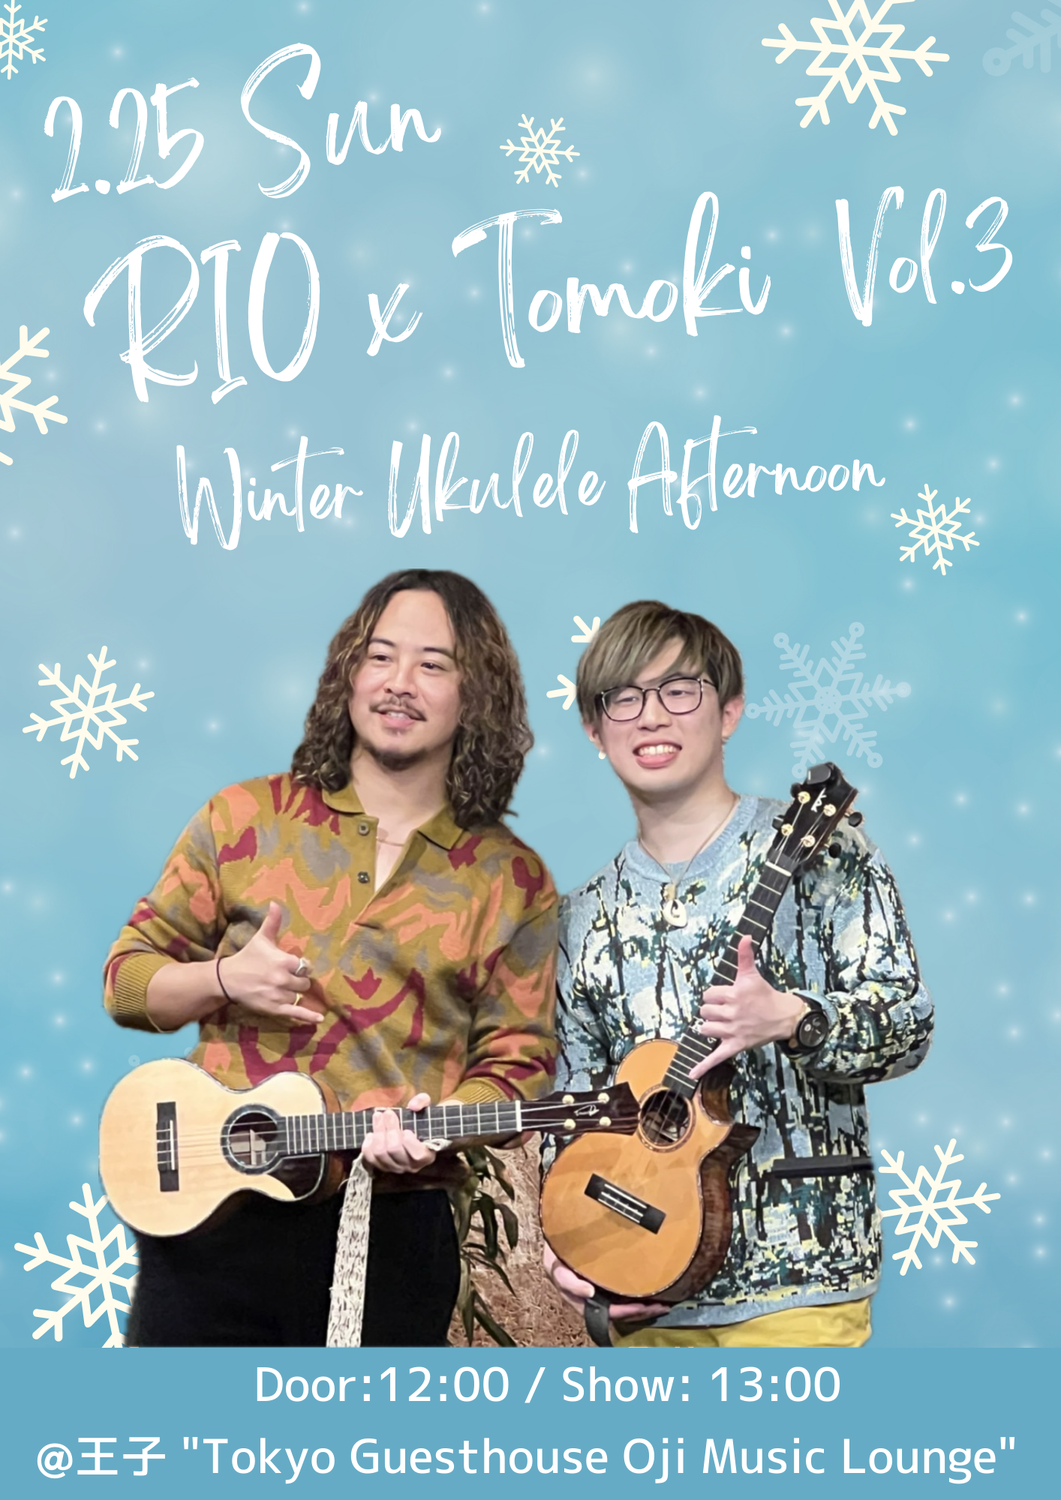 2/25/24 RIO x Tomoki Vol.3 Winter Ukulele Afternoon